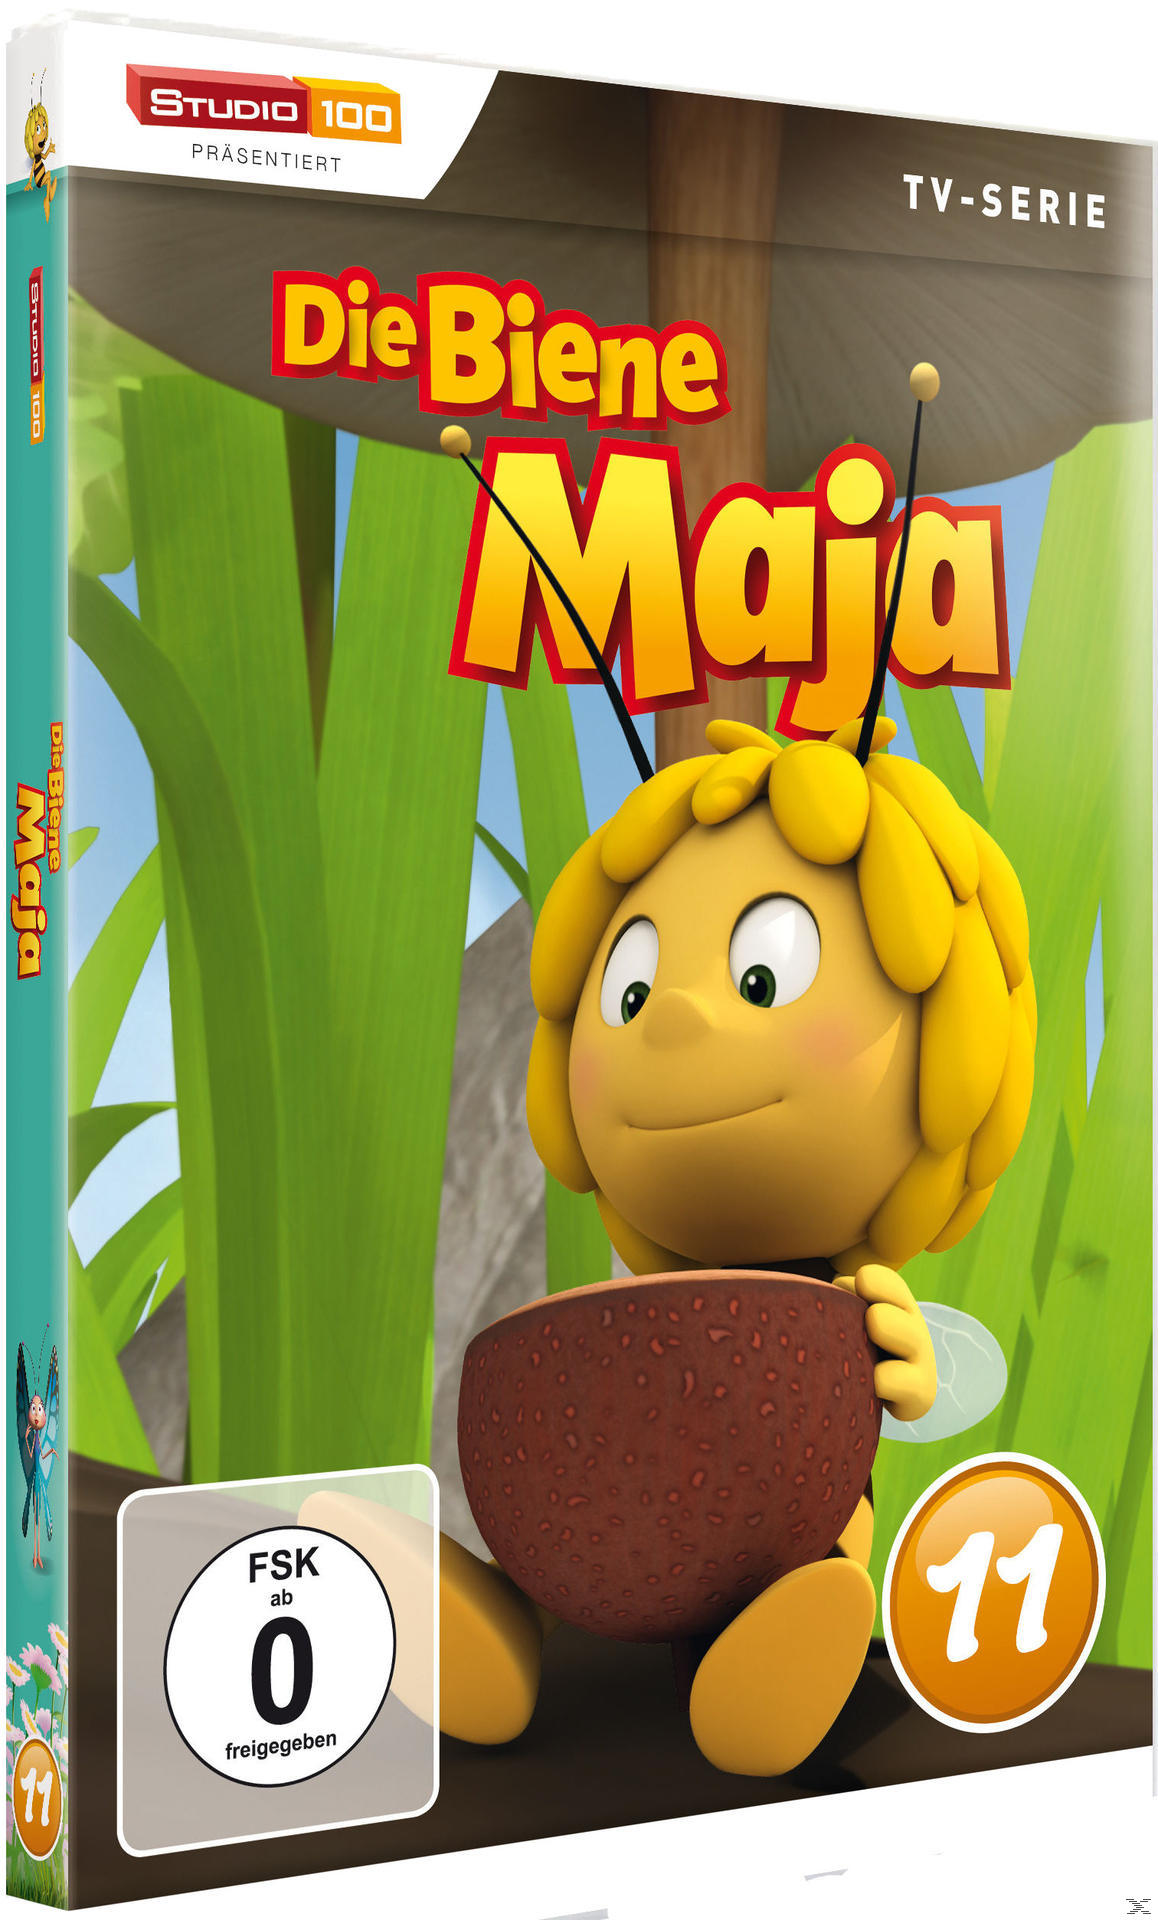 DVD Biene DVD 3D Die - 11 Maja